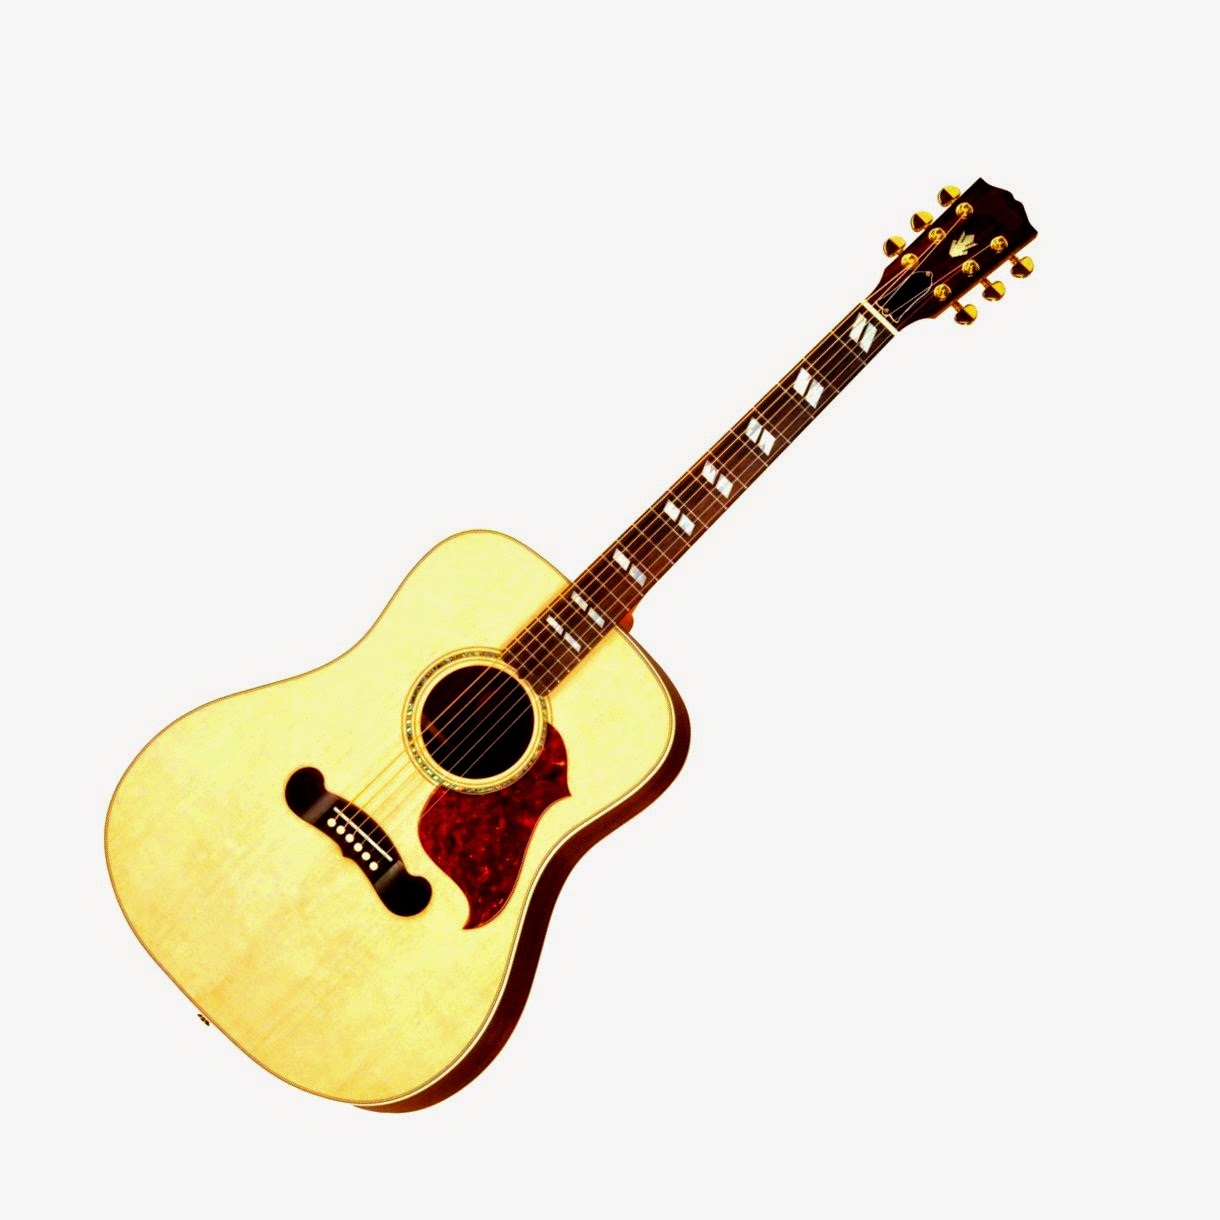 Toko Online Guitar Nesia: Cara pembuatan gitar